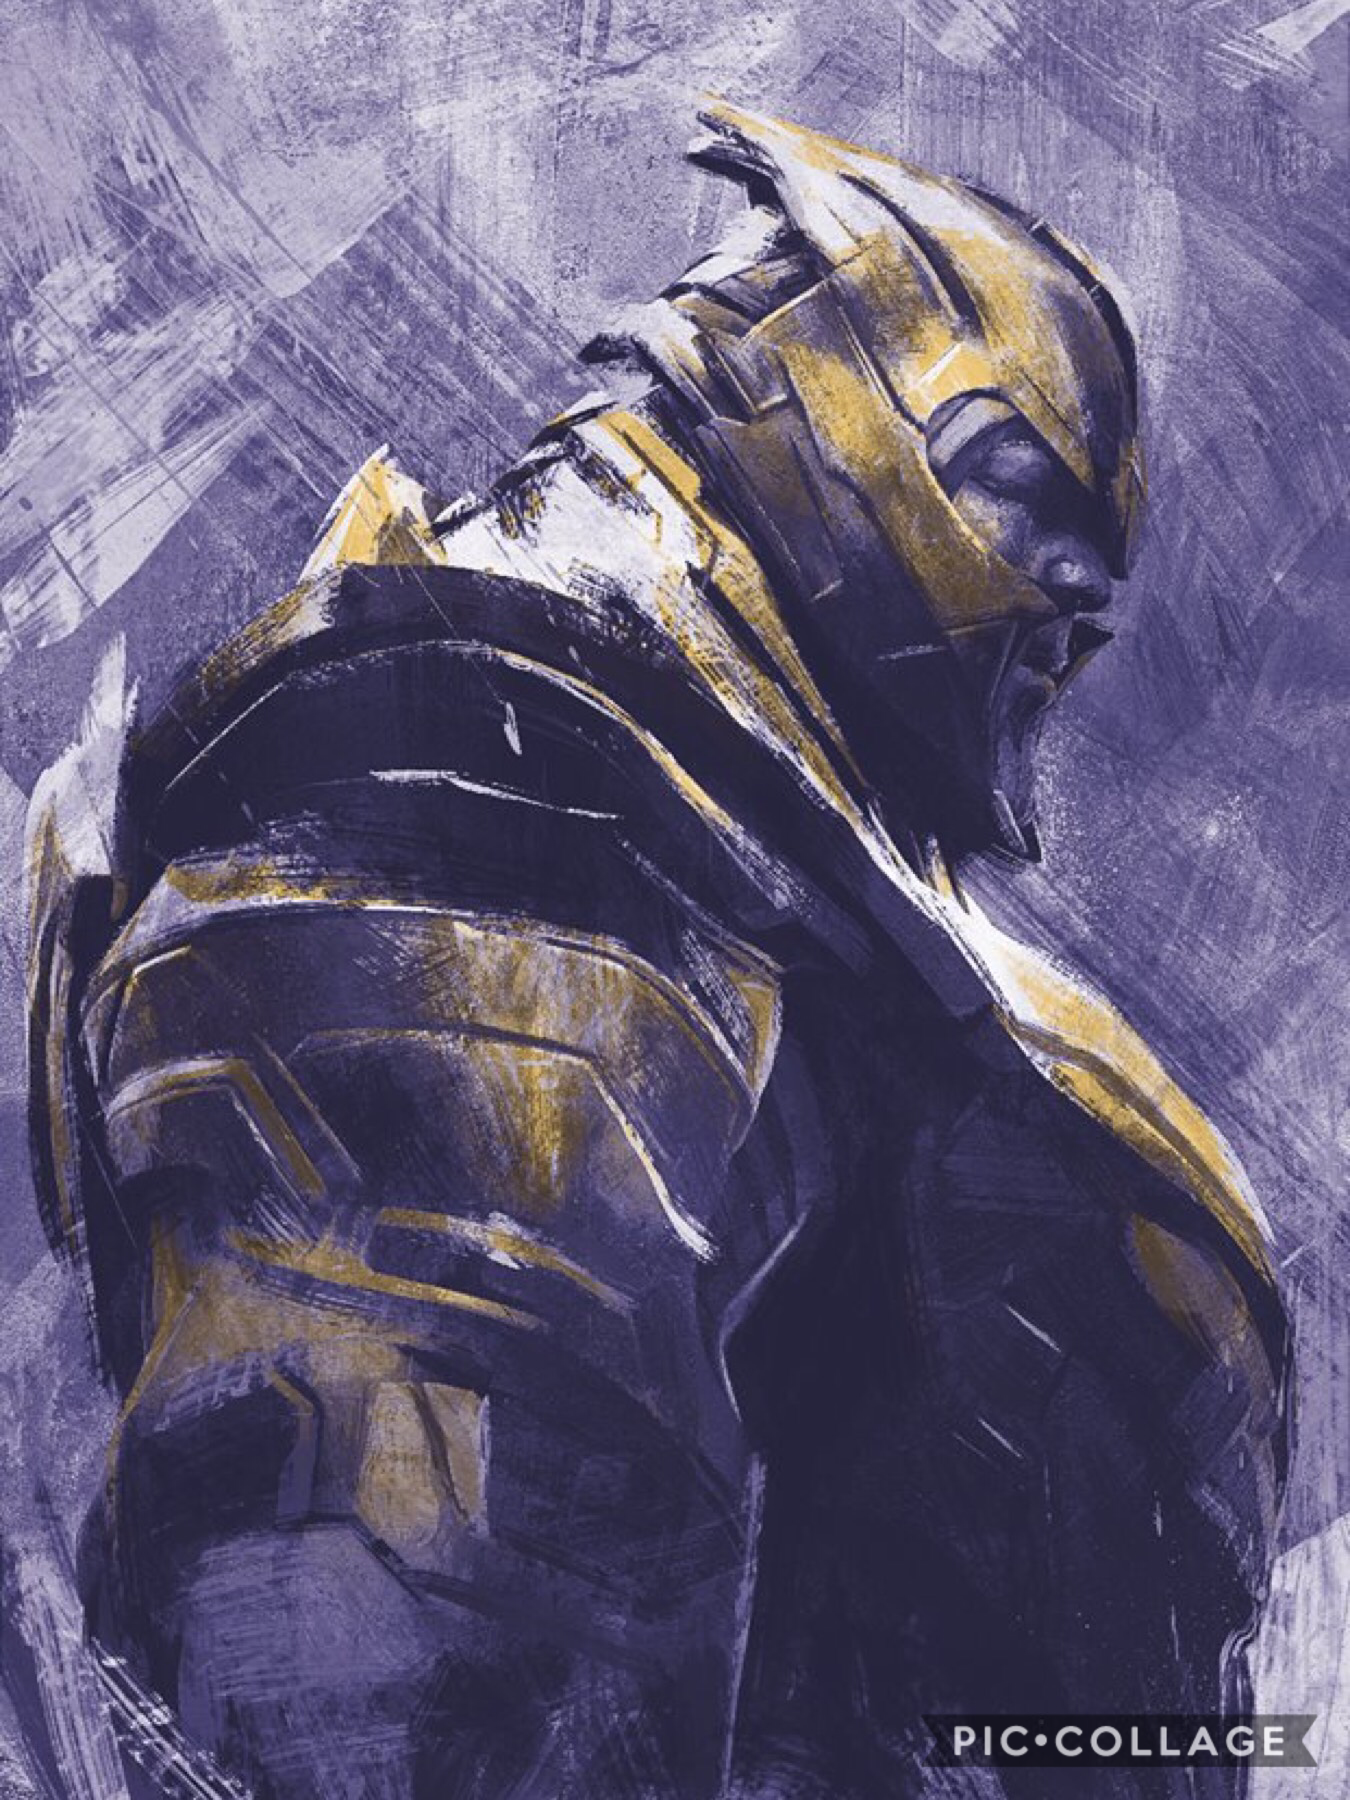 @Avengers #EndGame #Thanos in 2019 by Marvel Studios